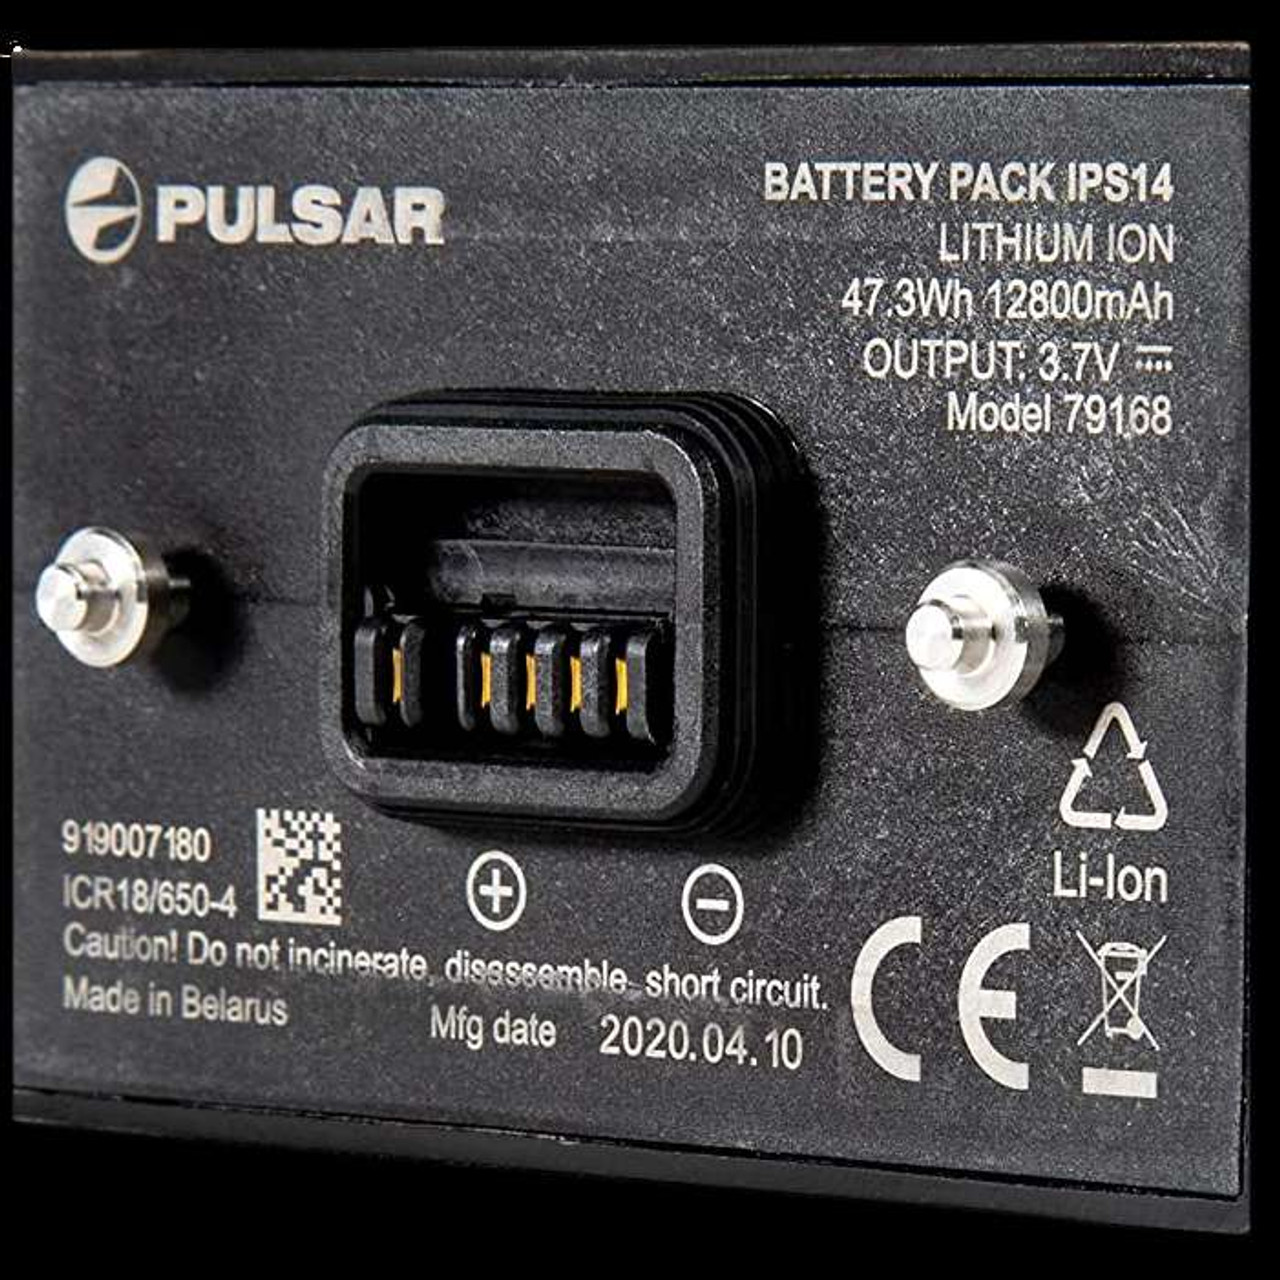 Pulsar IPS 14 Pulsar 79168 119.97